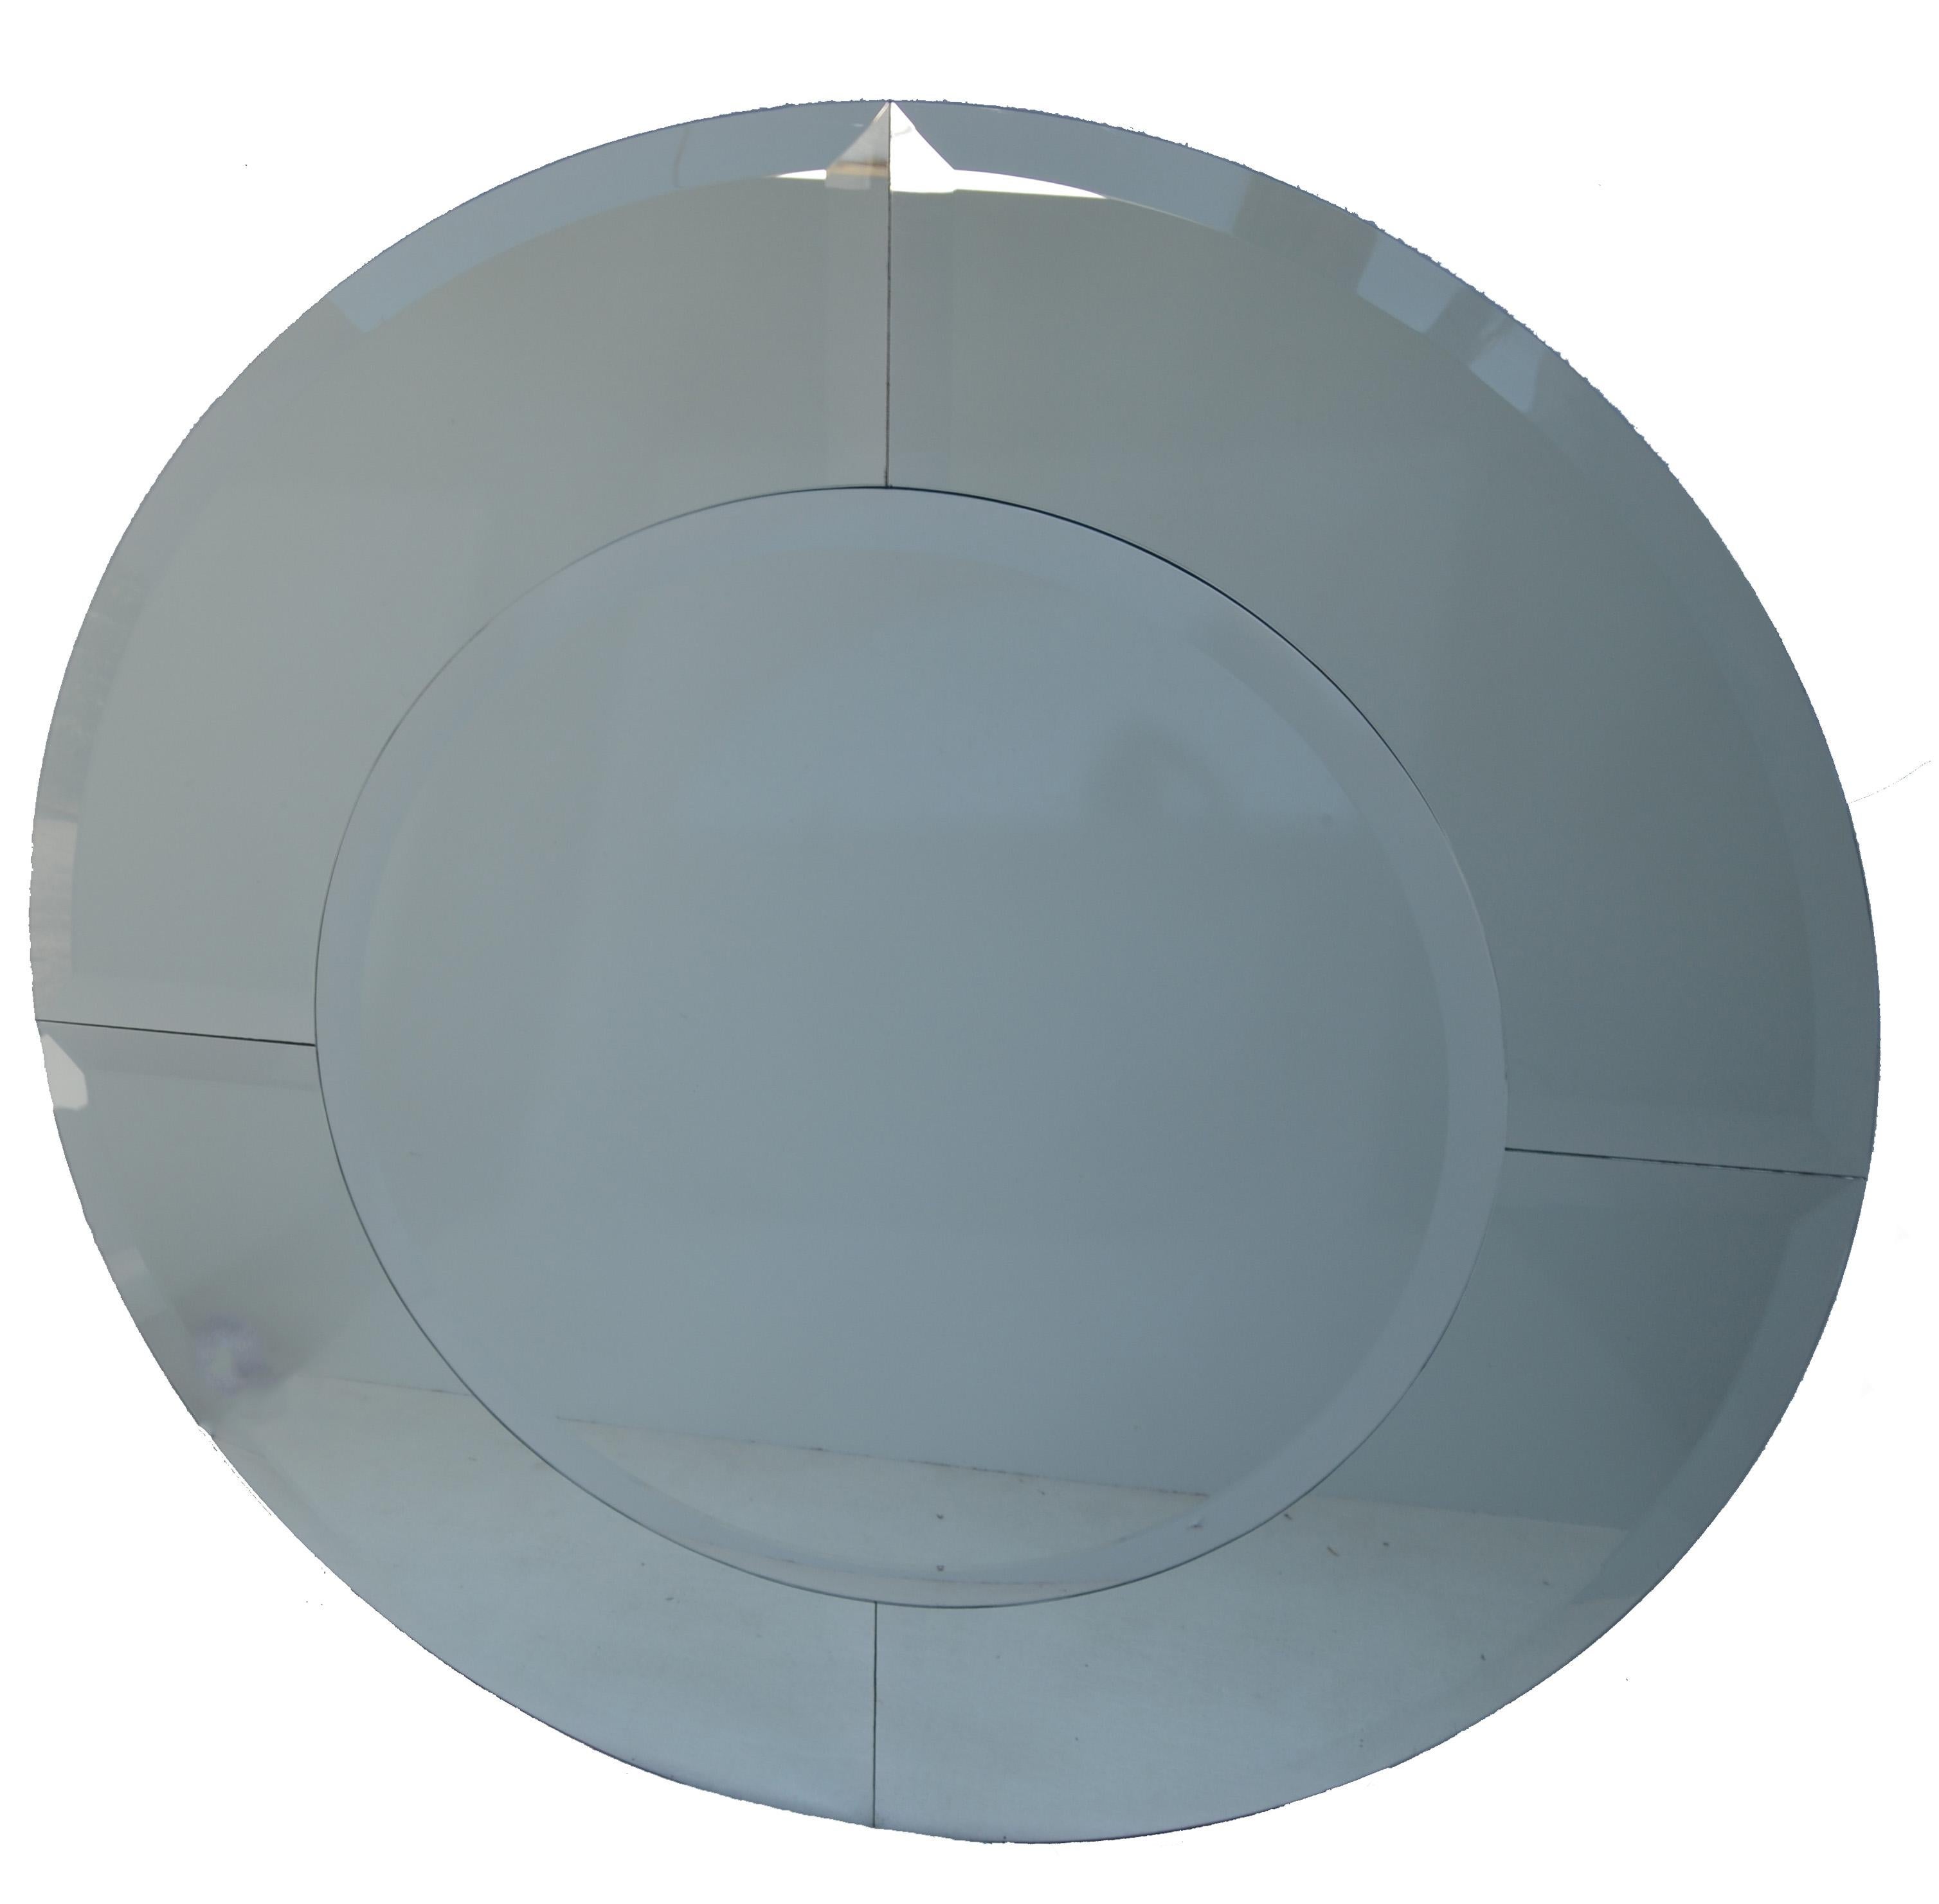 Paar minimalistische runde Saturn-Wandspiegel im Karl-Springer-Stil mit 5 abgeschrägten Glasscheiben, die auf einer dicken Holzscheibe montiert sind.
Klassische Handwerkskunst der Jahrhundertmitte im Stil von Karl Springer, hergestellt in Amerika